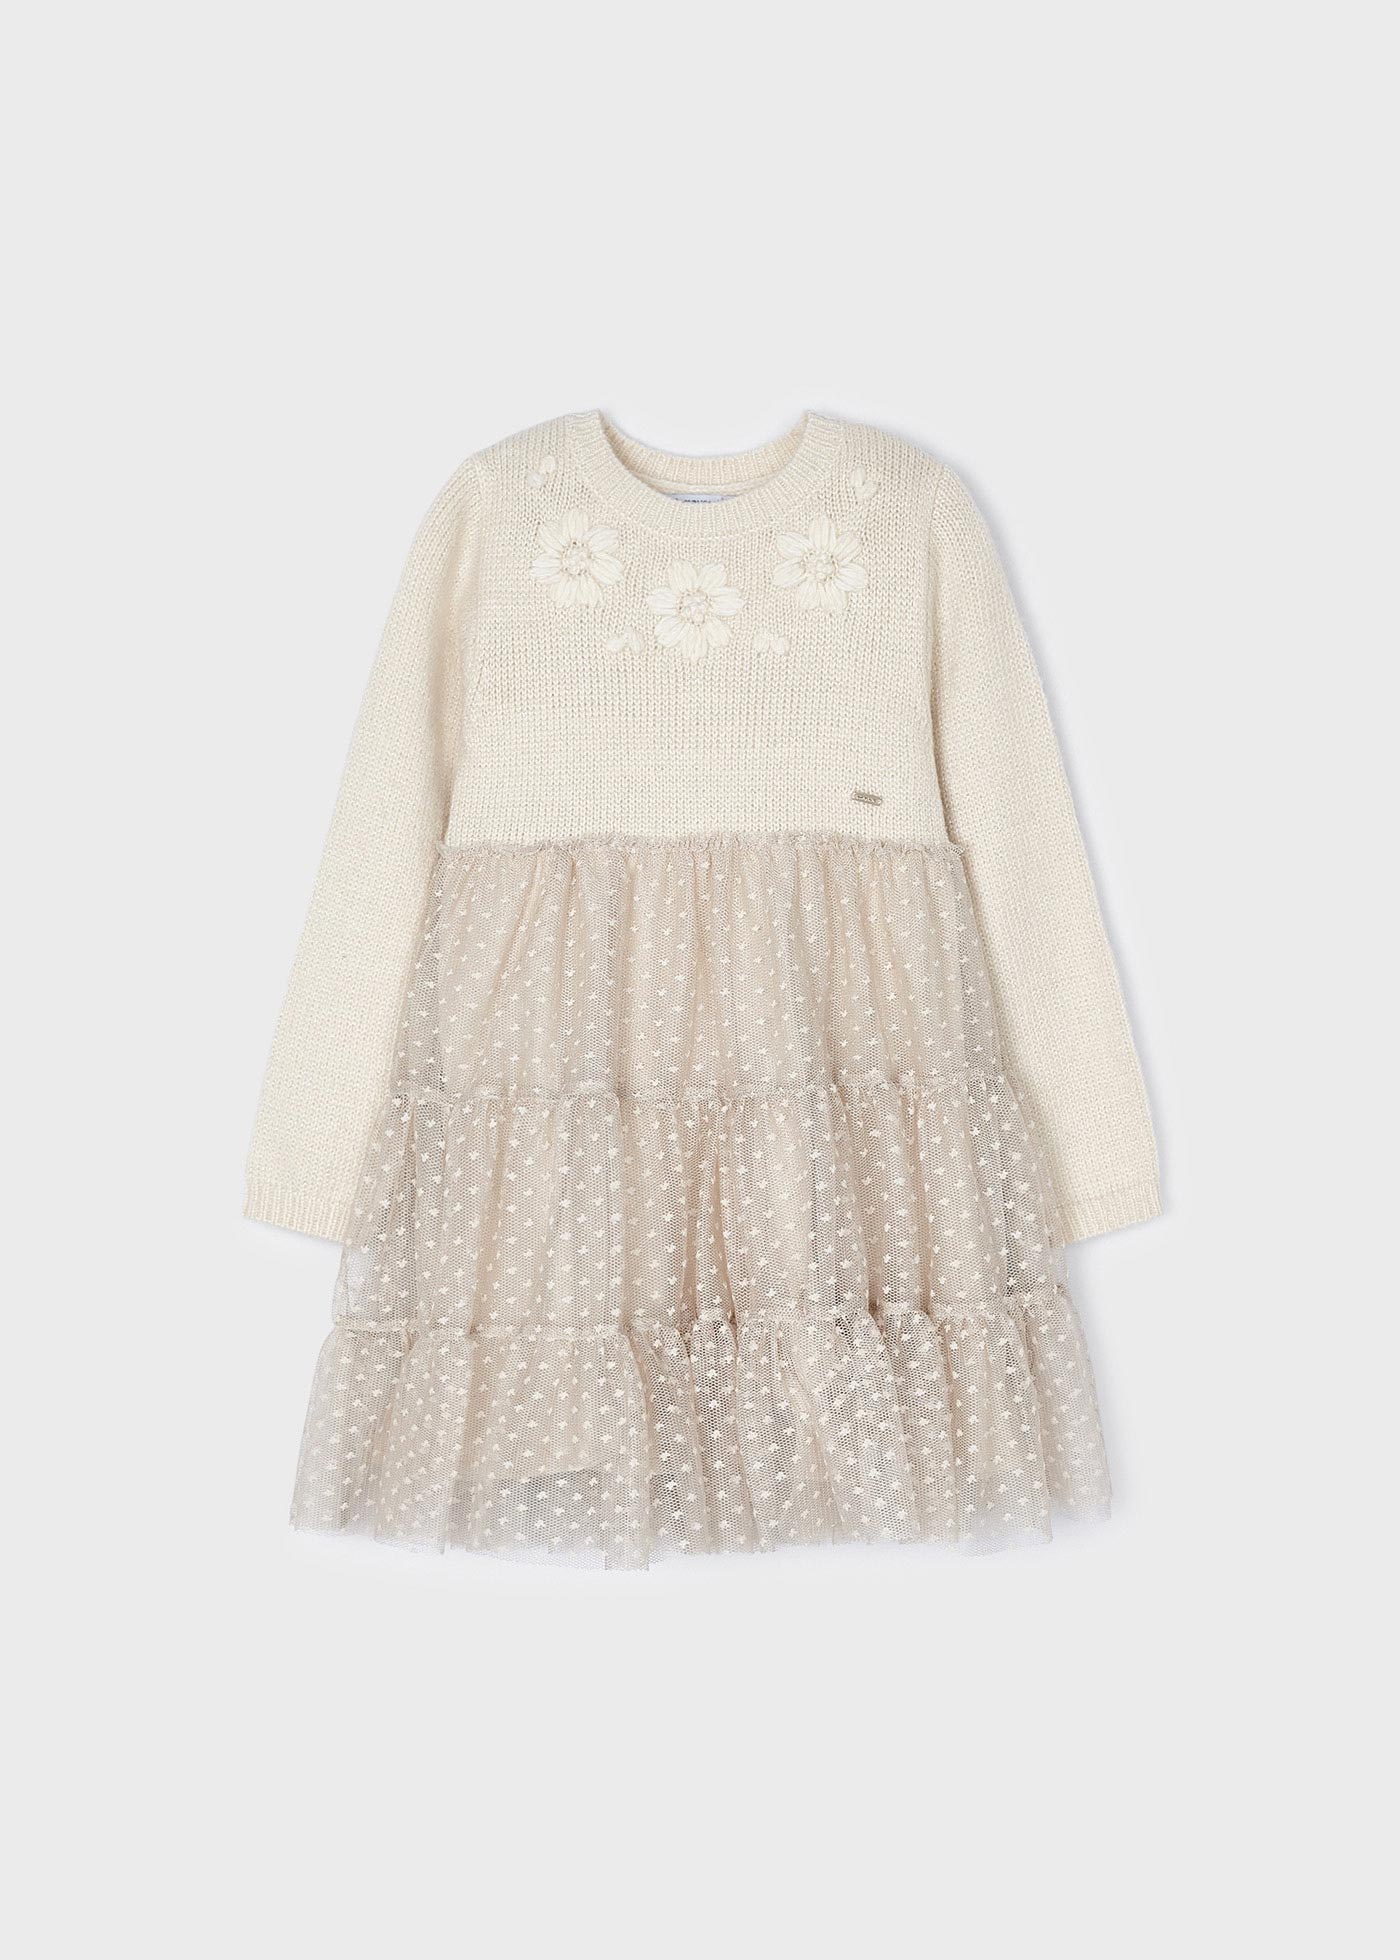 Tulle knit dress floral applique Mayoral girl ® 